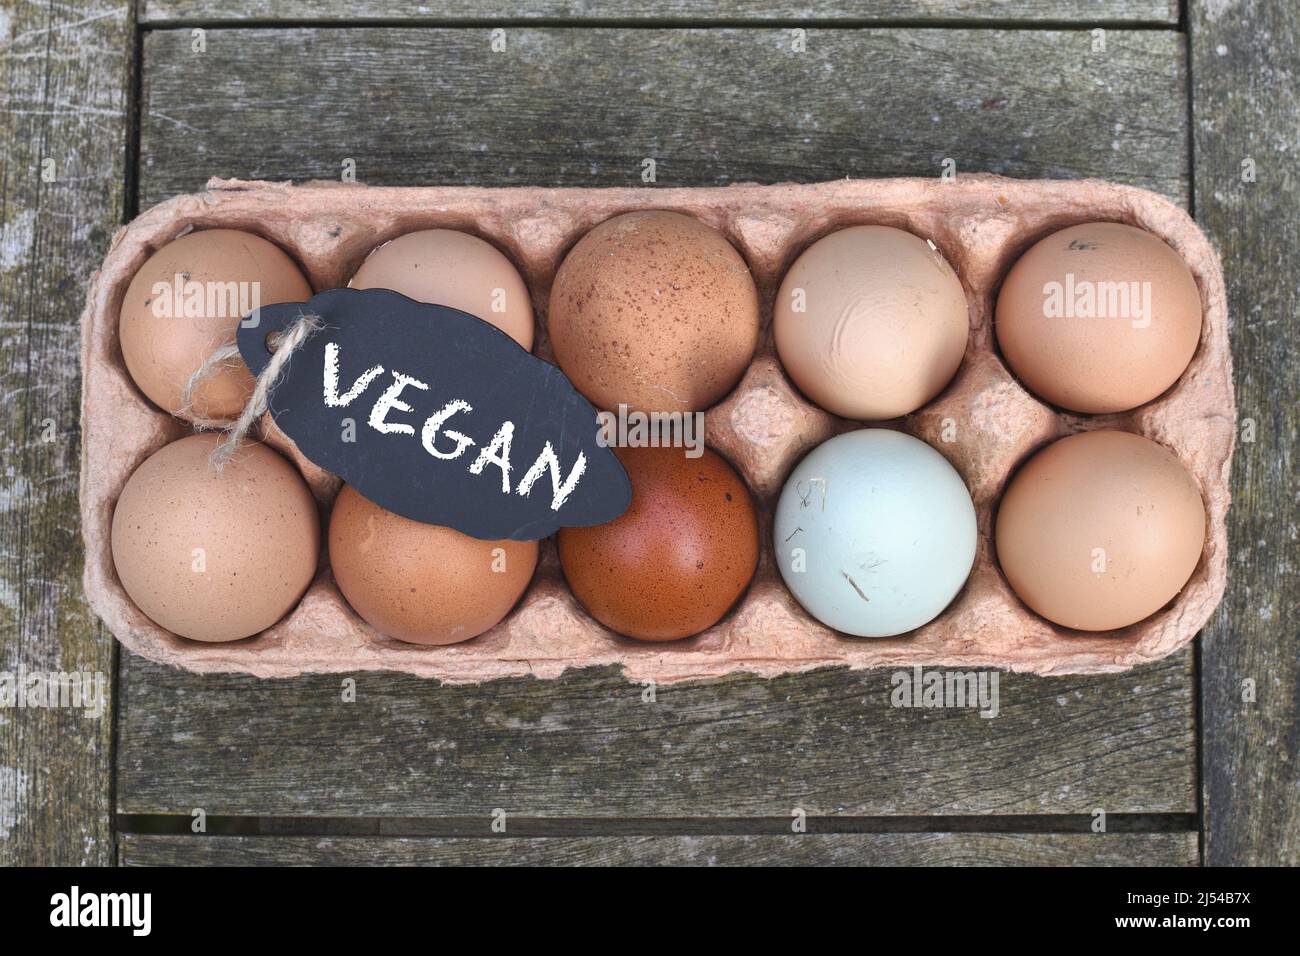 Pizarra con la inscripción 'Vegan' sobre huevos de pollo en la caja de huevos, Alemania Foto de stock